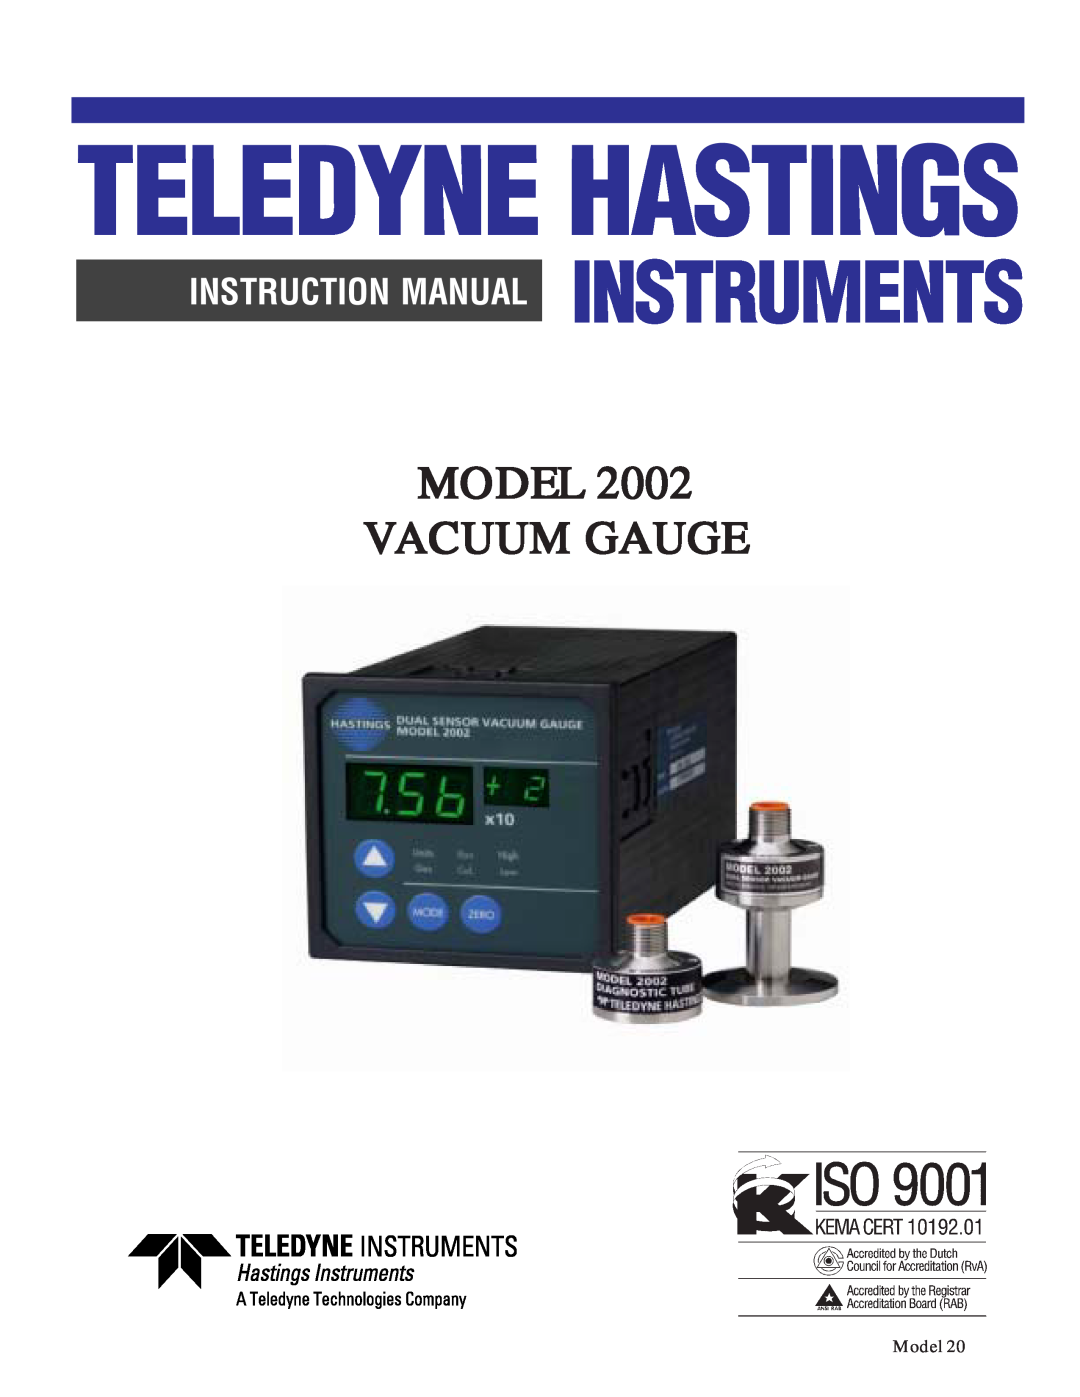 Teledyne 2002 instruction manual Teledyne Hastings, Model Vacuum Gauge 